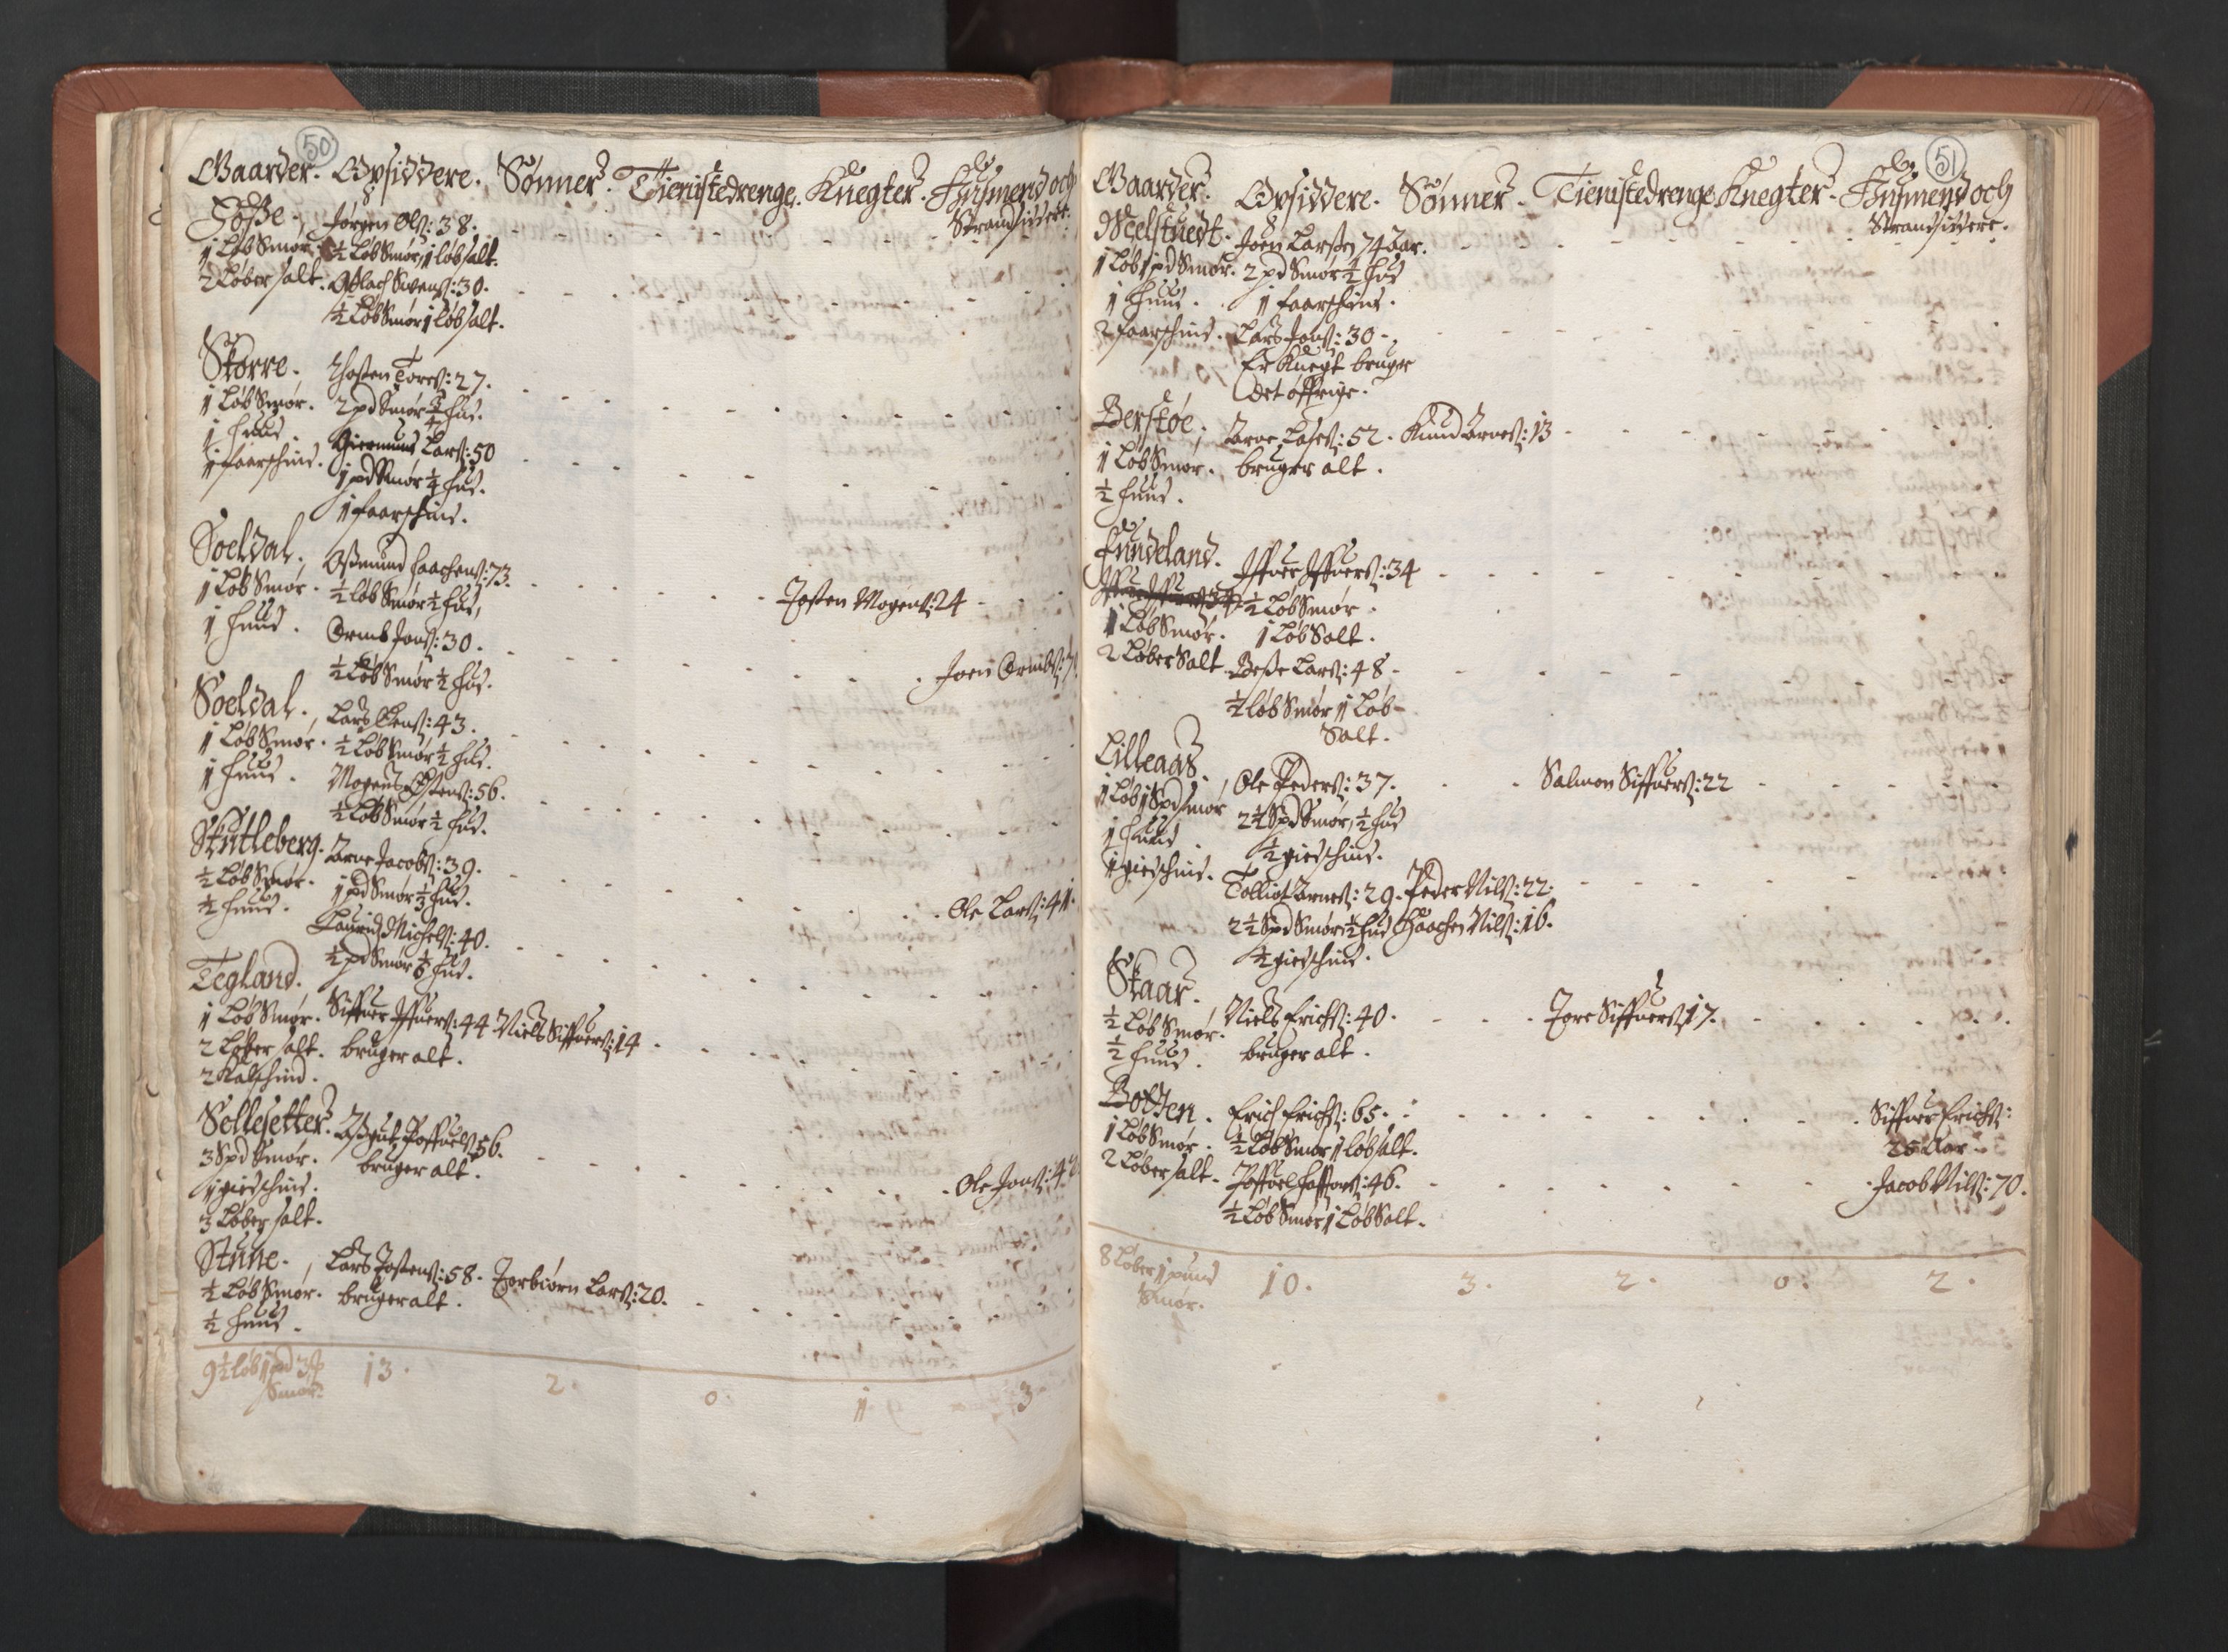 RA, Bailiff's Census 1664-1666, no. 14: Hardanger len, Ytre Sogn fogderi and Indre Sogn fogderi, 1664-1665, p. 50-51